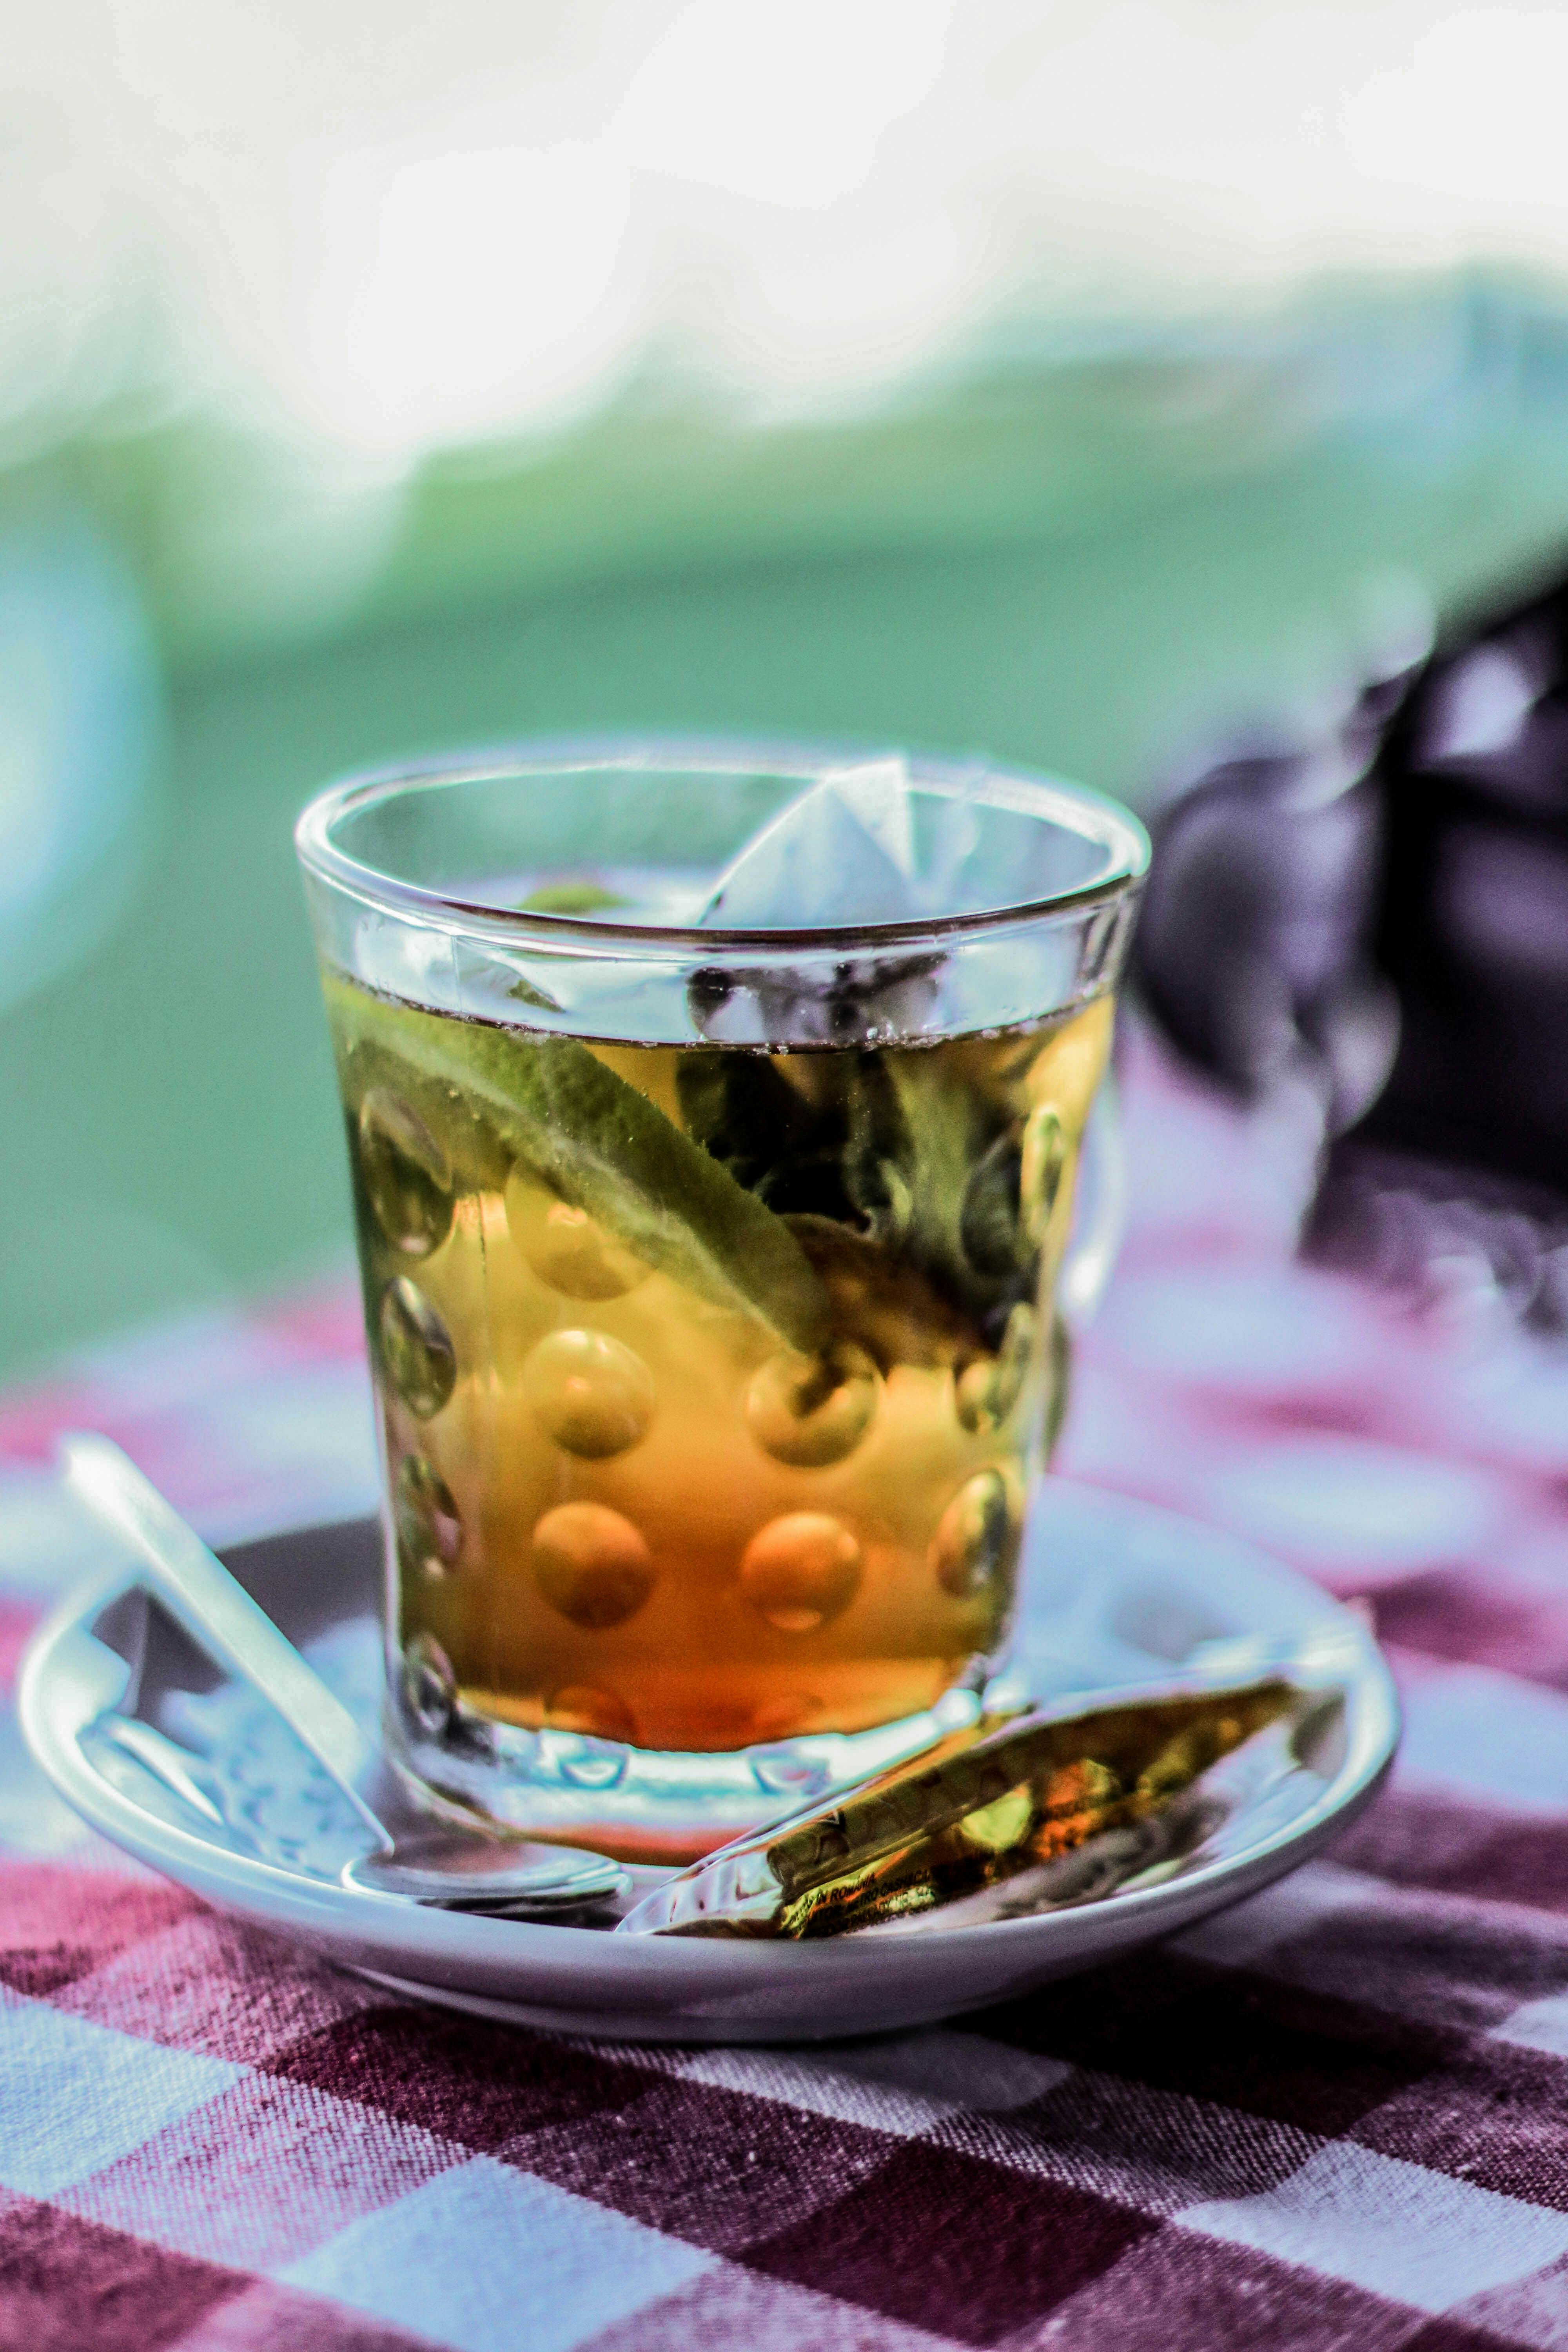 How To Make White Elephant Kratom Tea At Home?